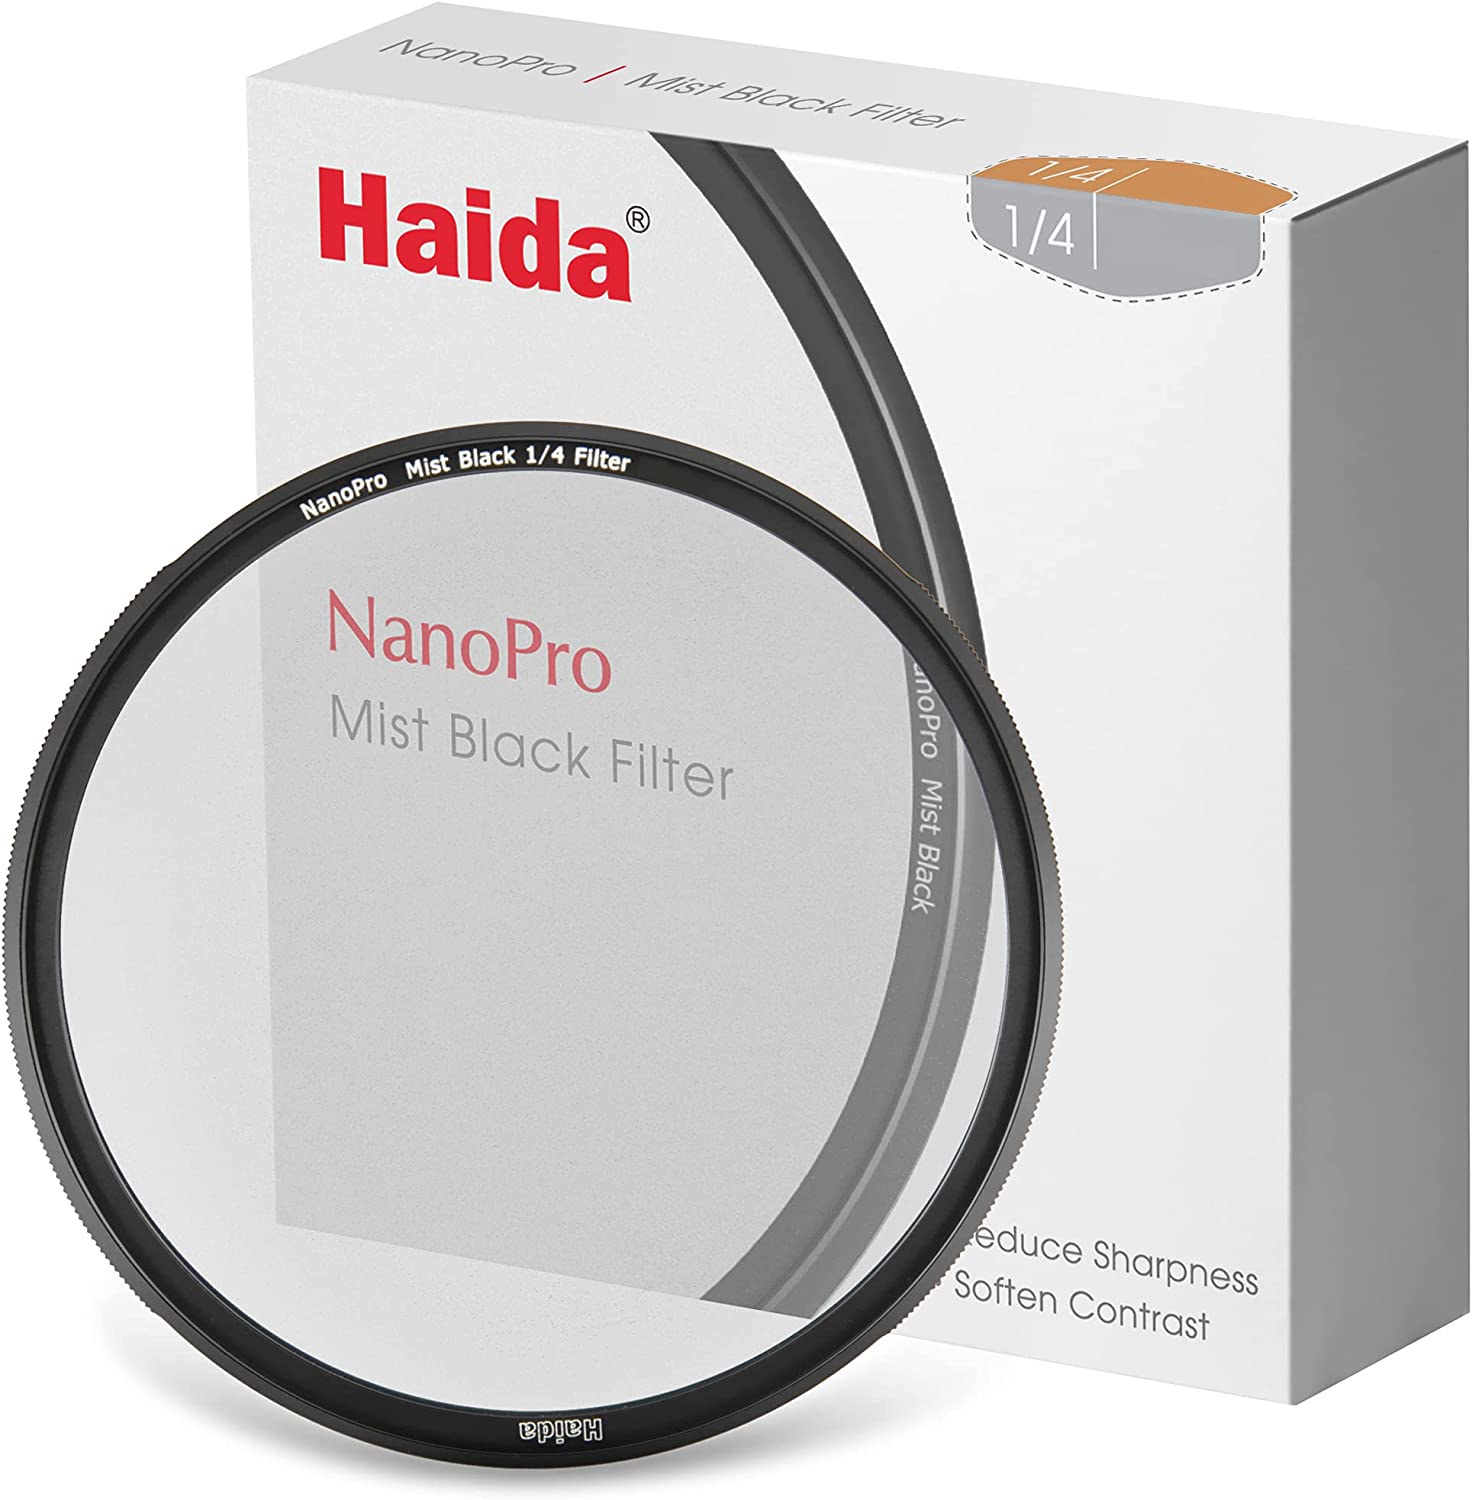 Haida NanoPro Mist Black 1/4 Filtro 52mm